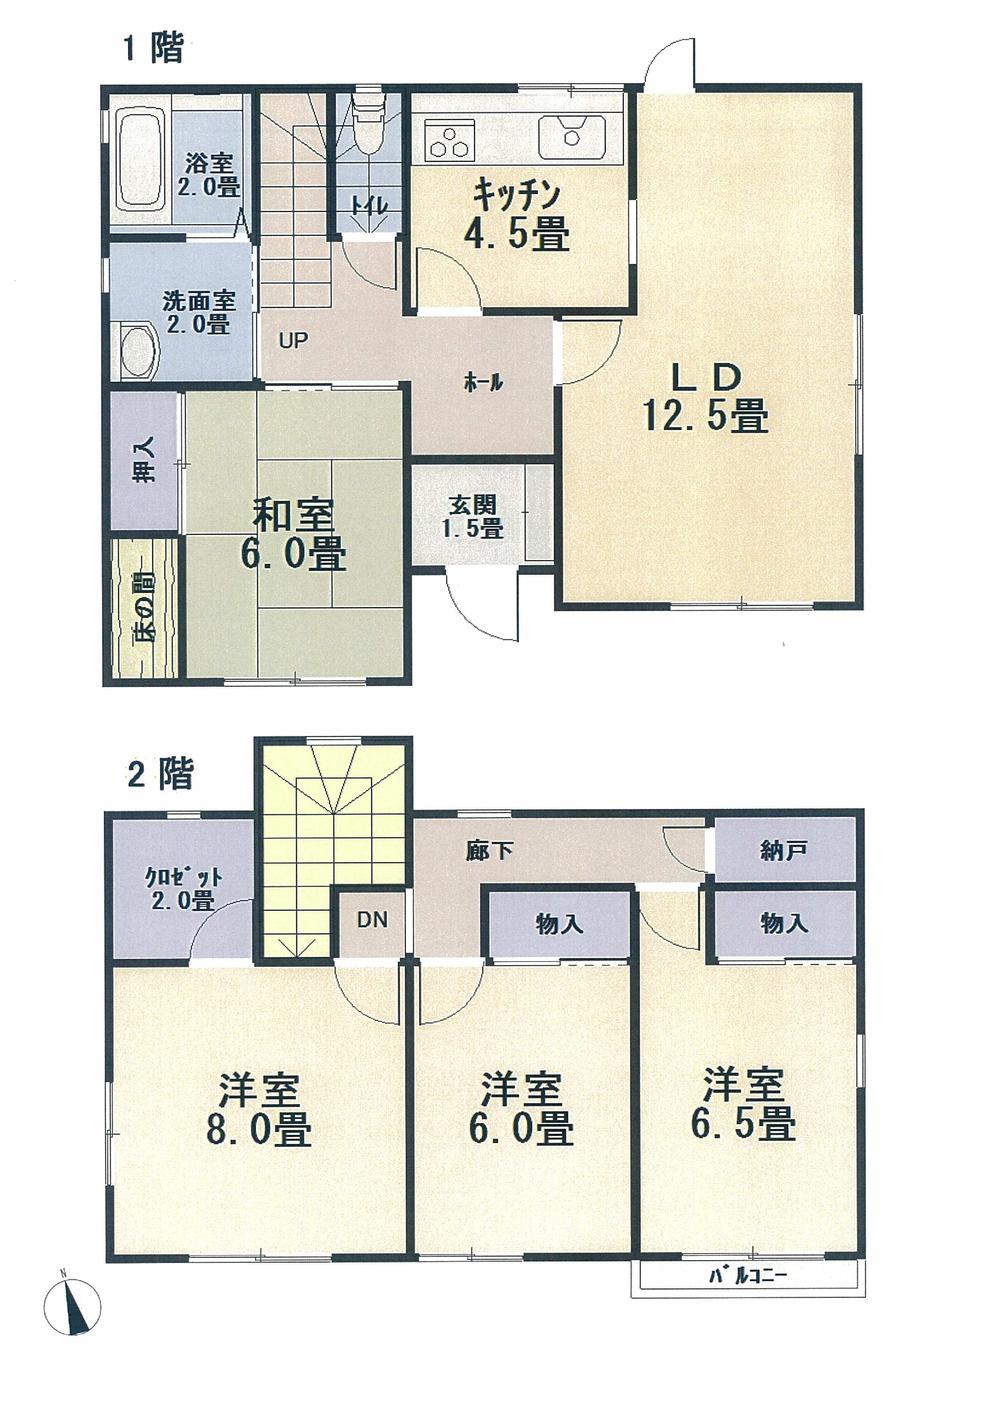 Floor plan. 23.8 million yen, 4LDK, Land area 279.68 sq m , Building area 111.79 sq m